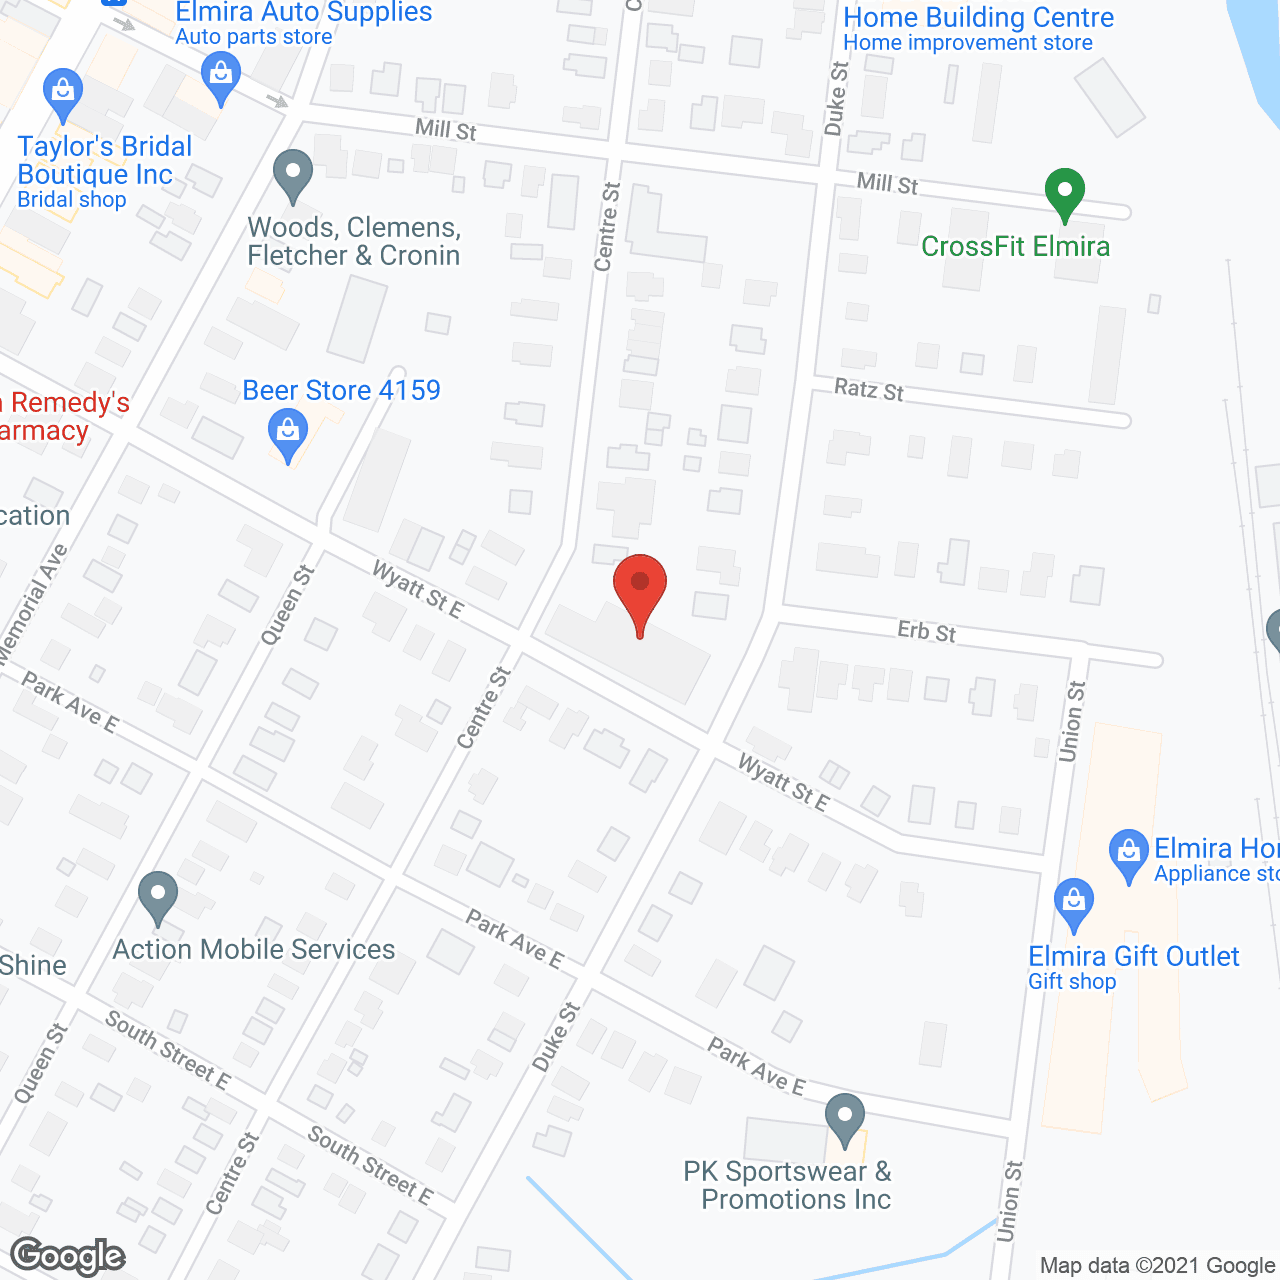 Duke Centre Retirement Home in google map